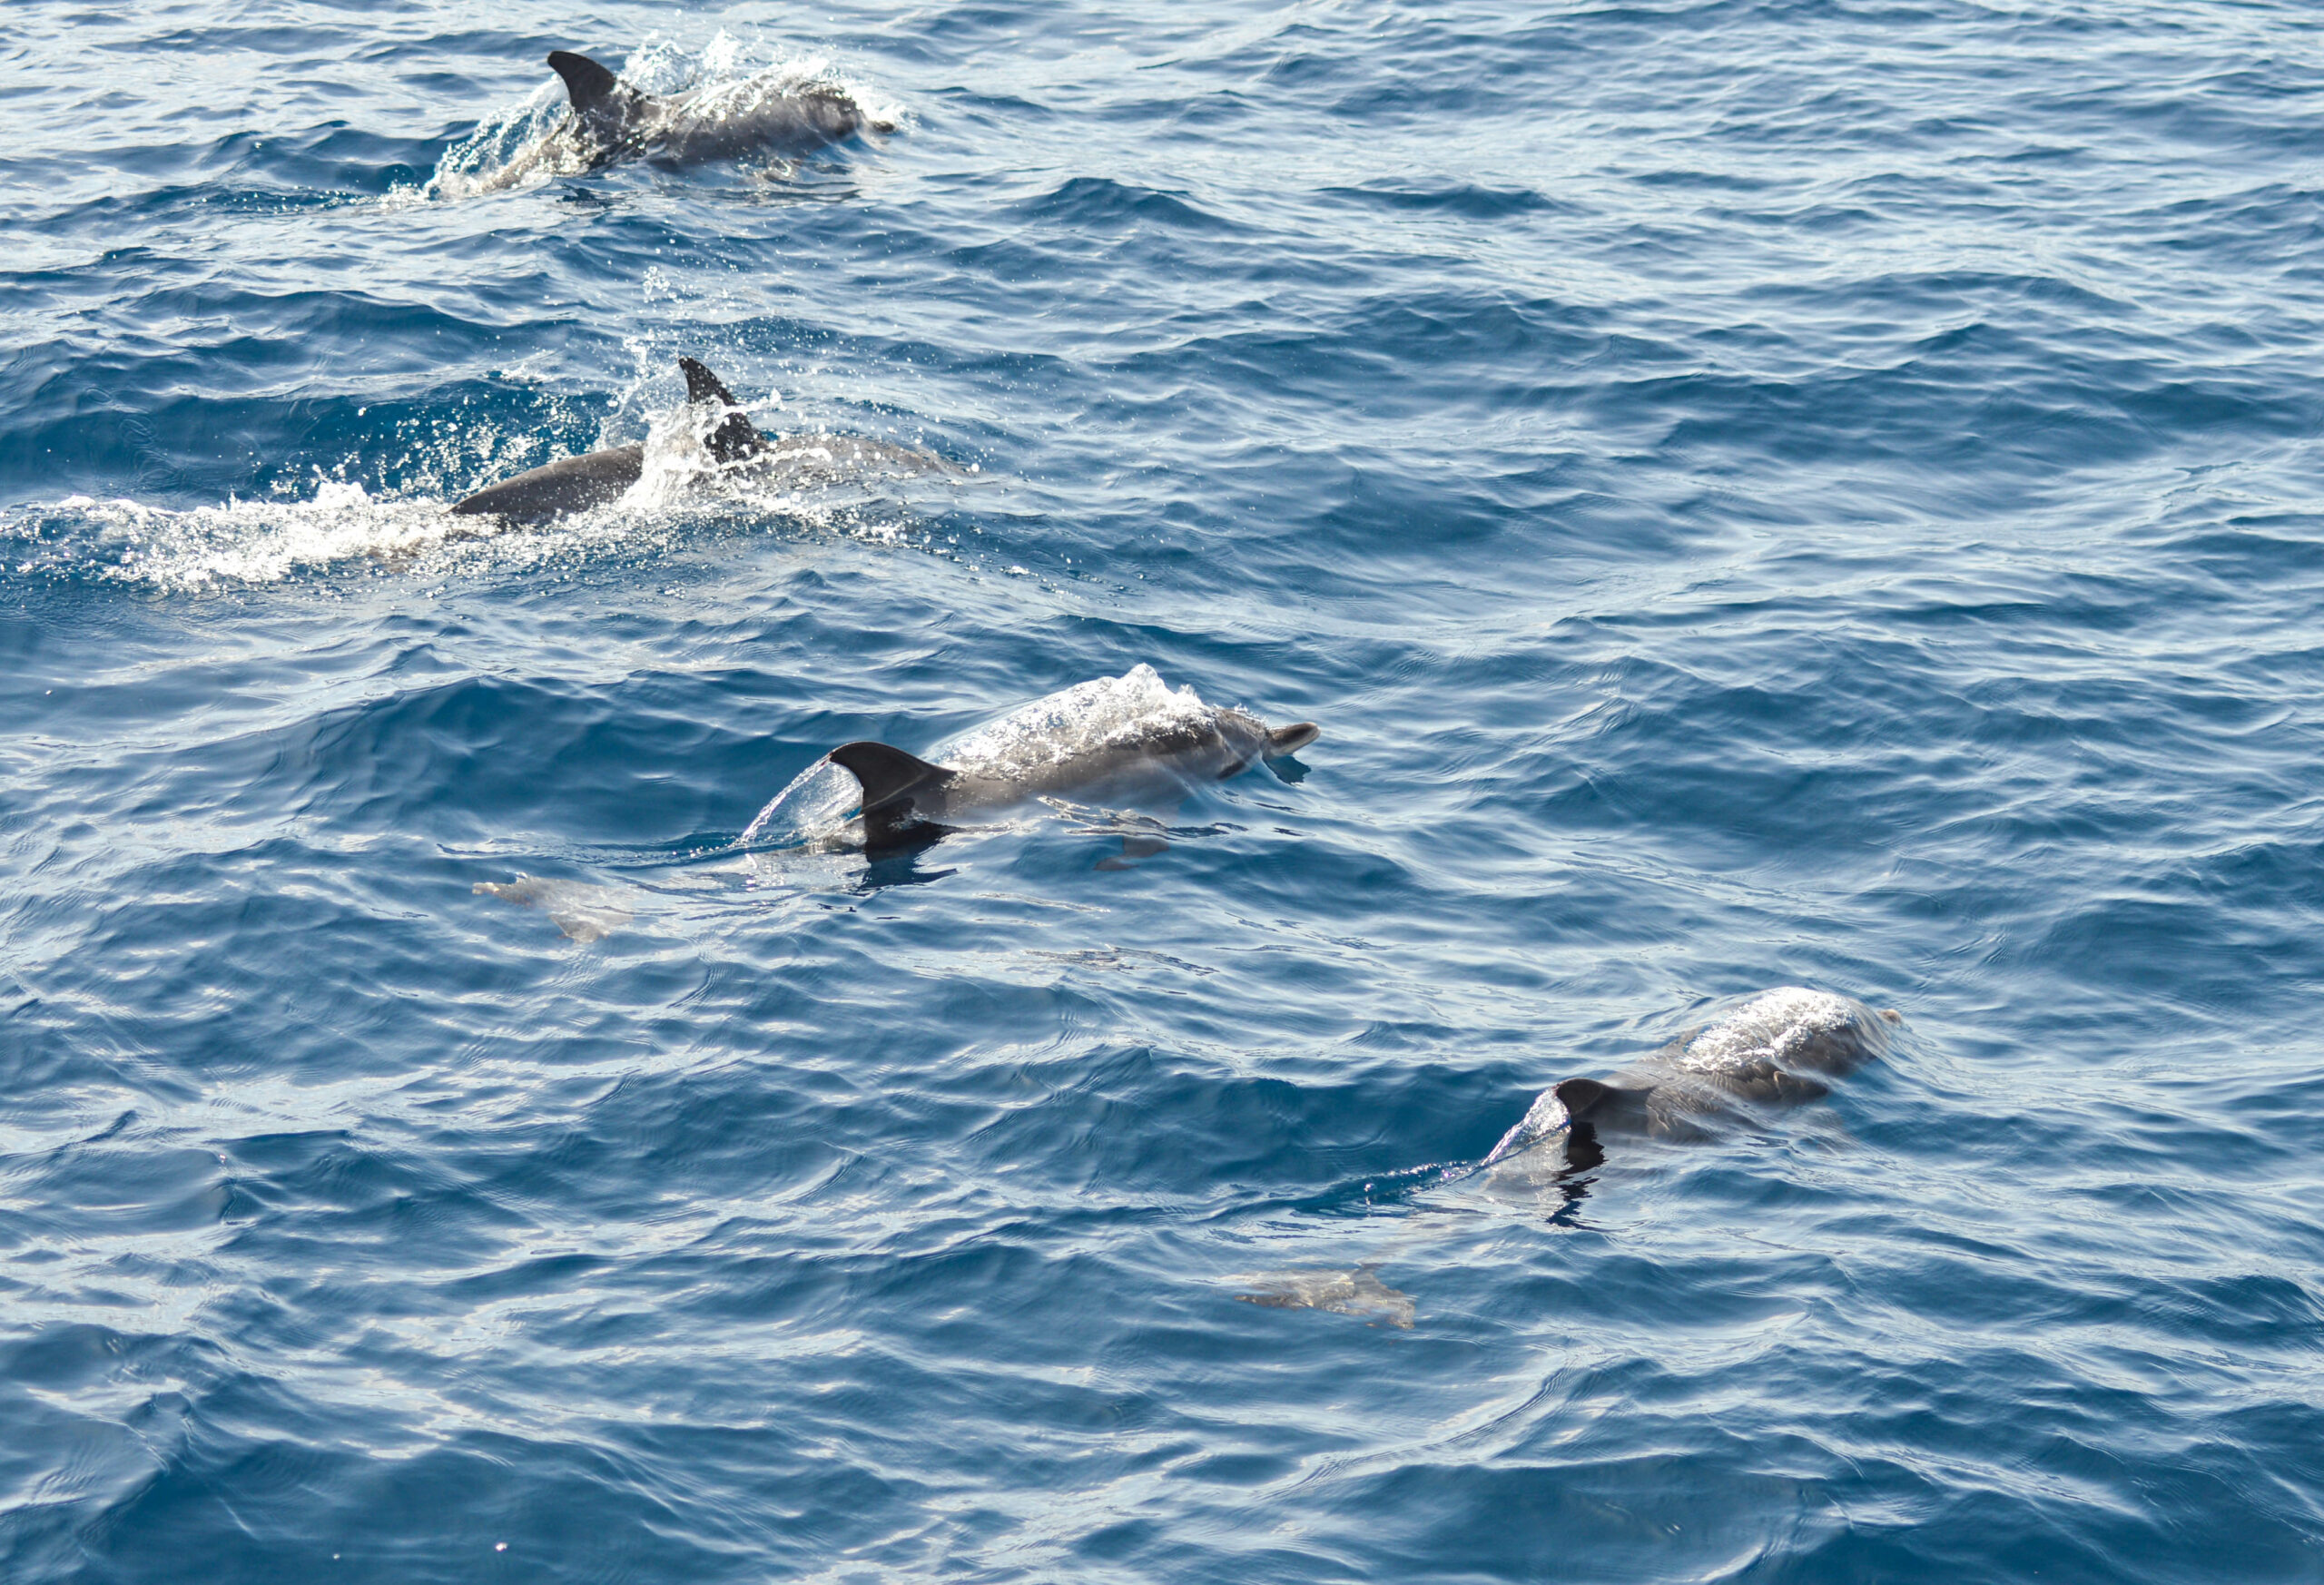 4 dauphins côte à côte, entrain de sortir de l'eau